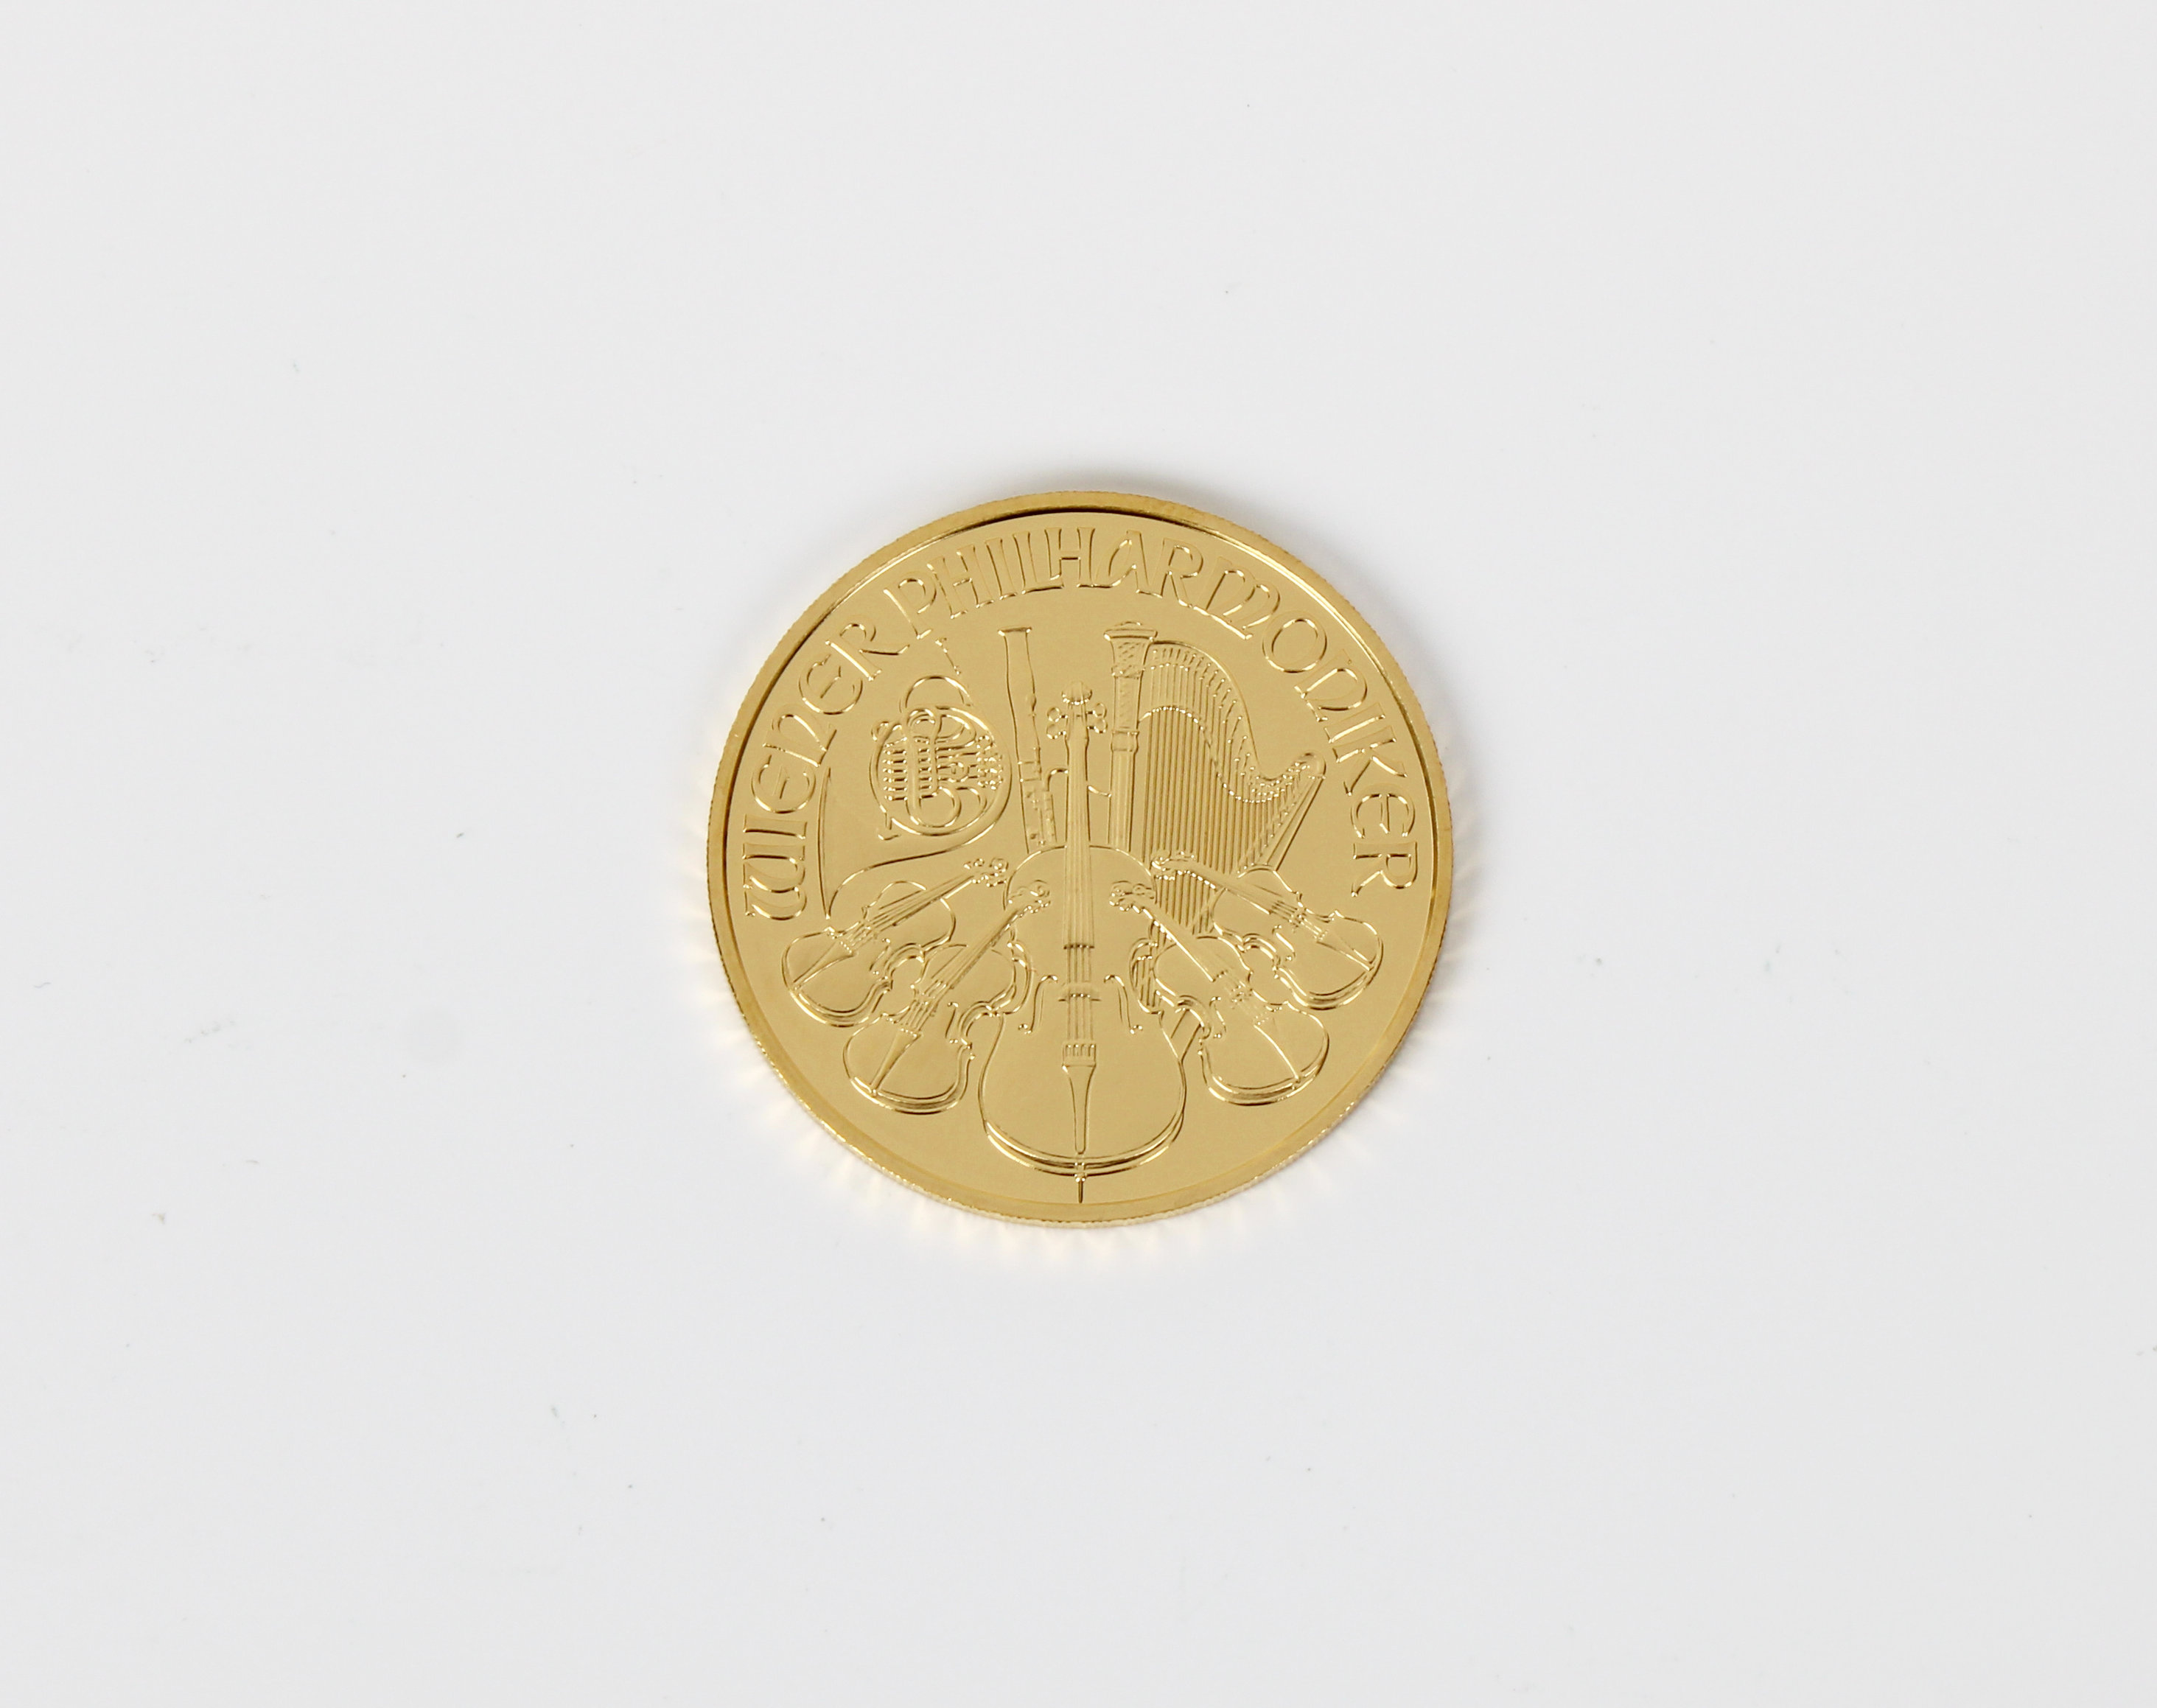 A Münze Österreich Vienna Austria 2003 1oz Gold (.999) 100 Euro coin.